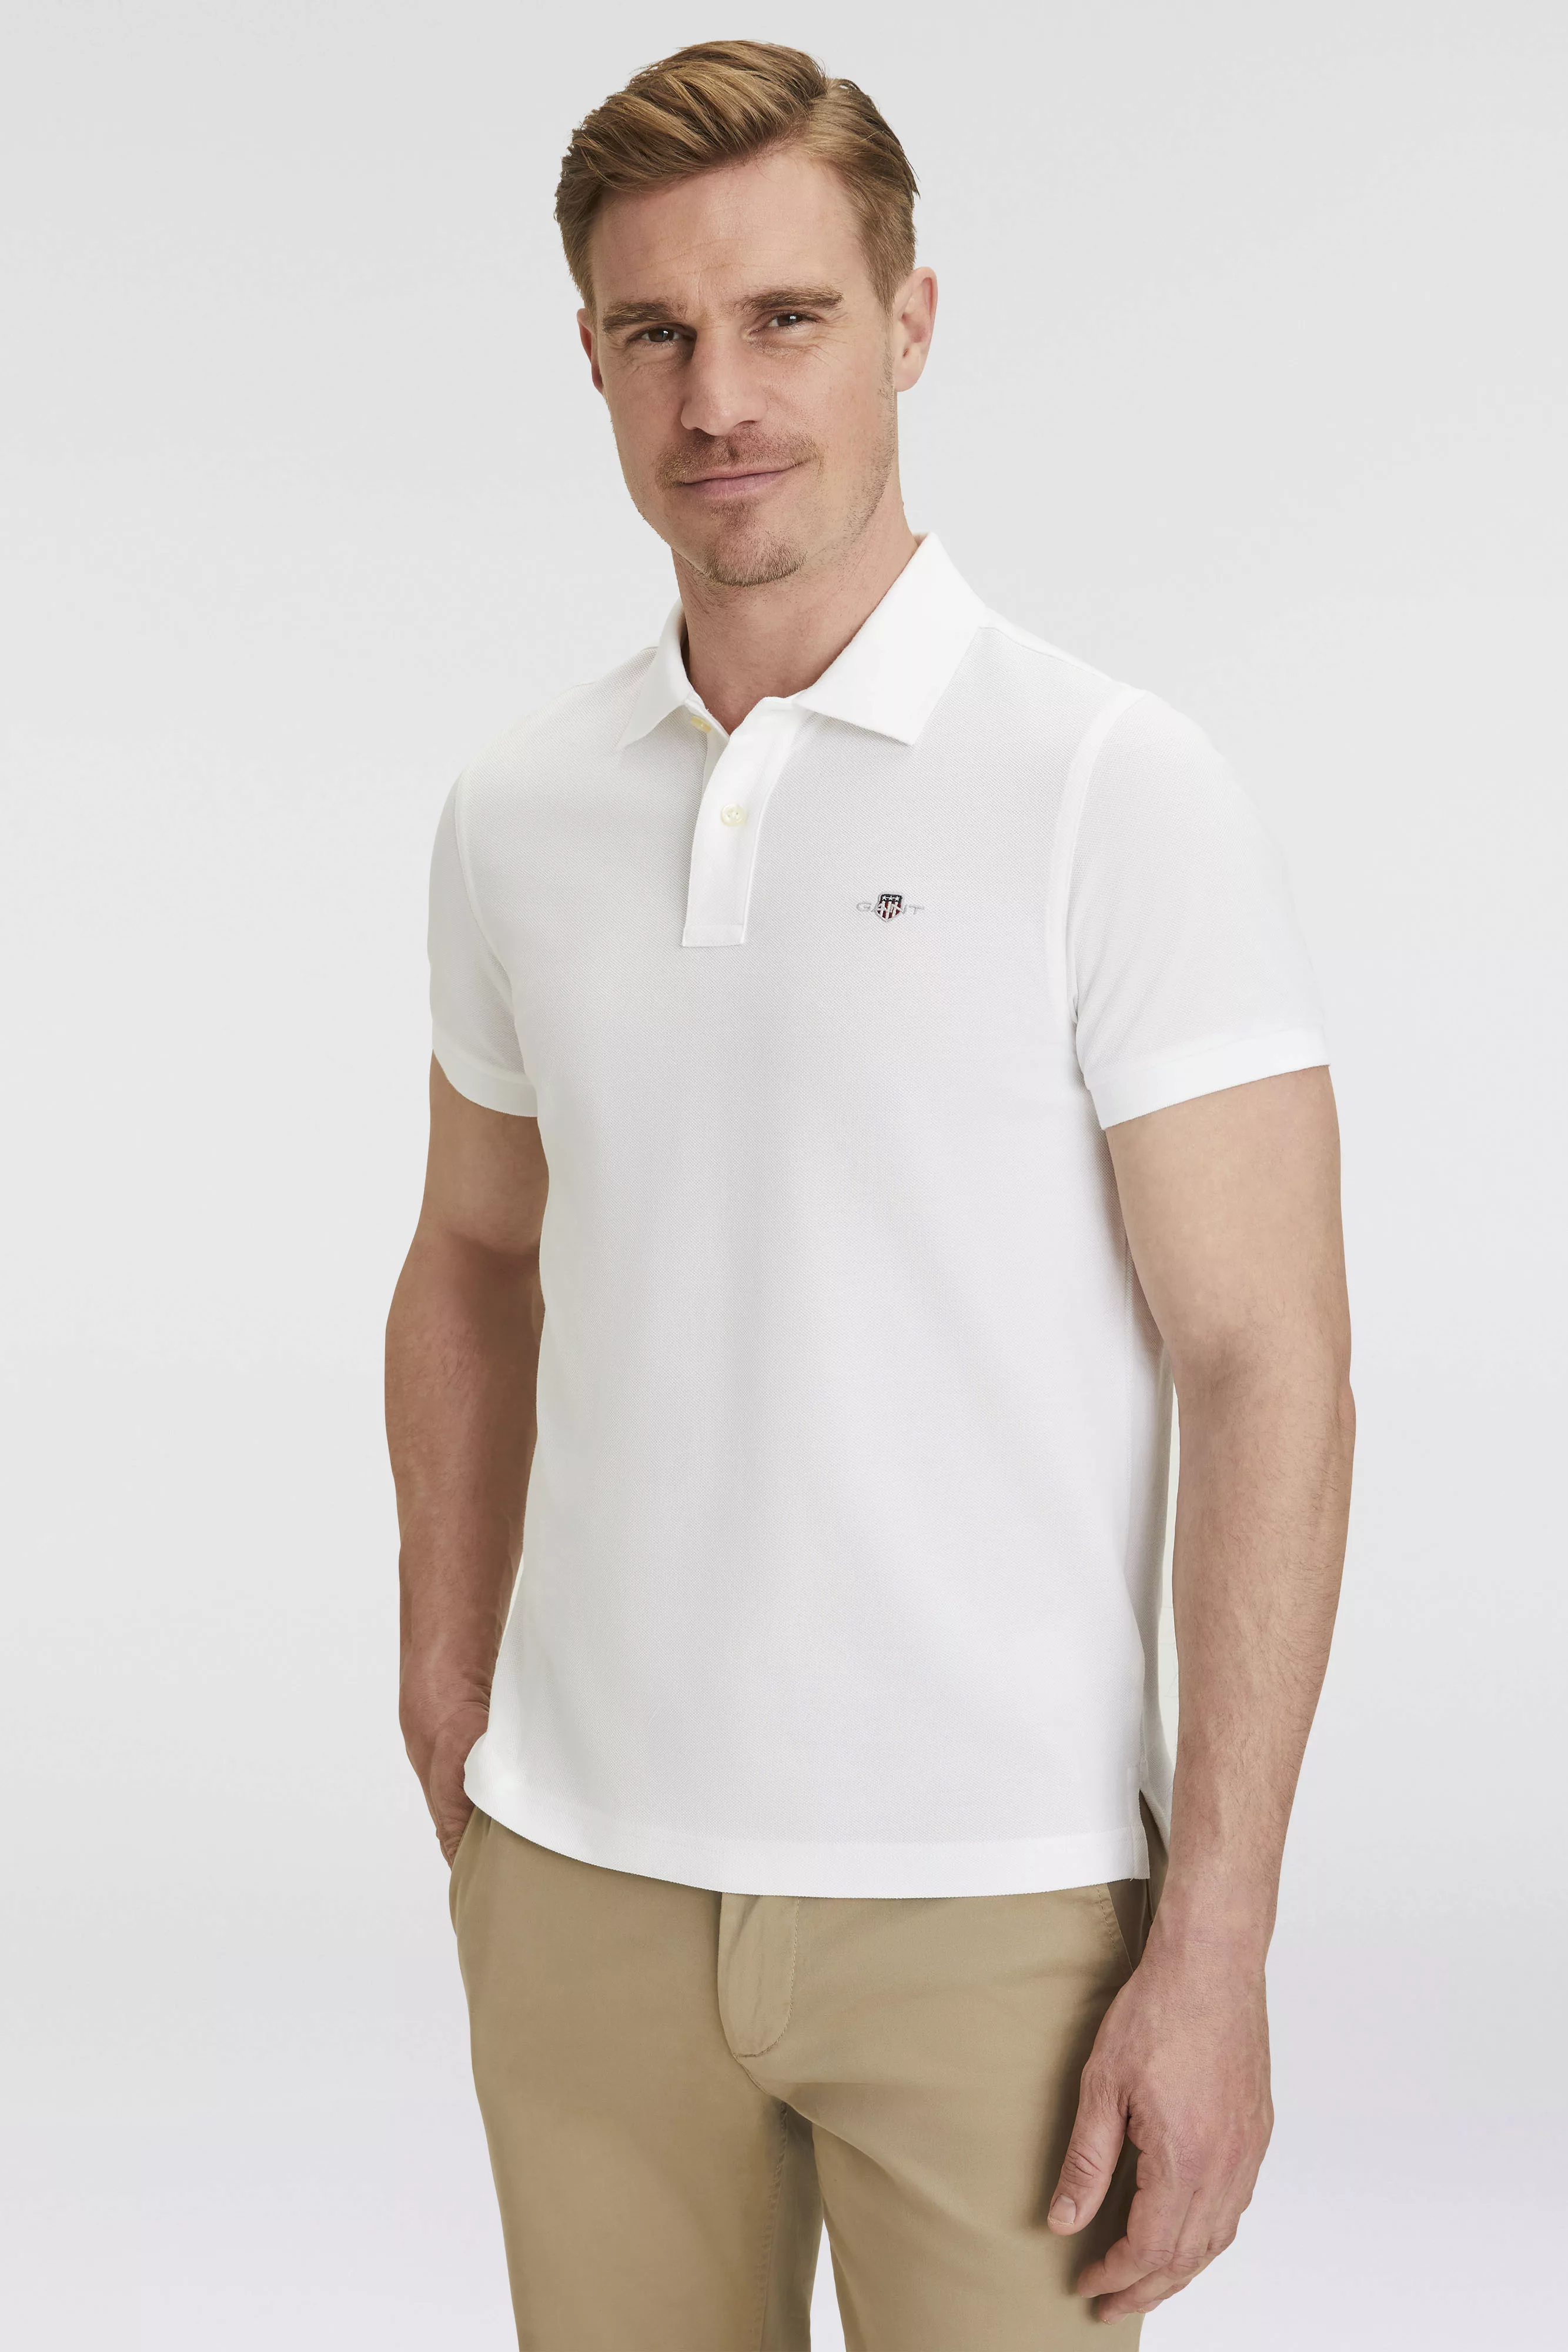 Gant Contrast Piqué Poloshirt Navy - Größe 4XL günstig online kaufen